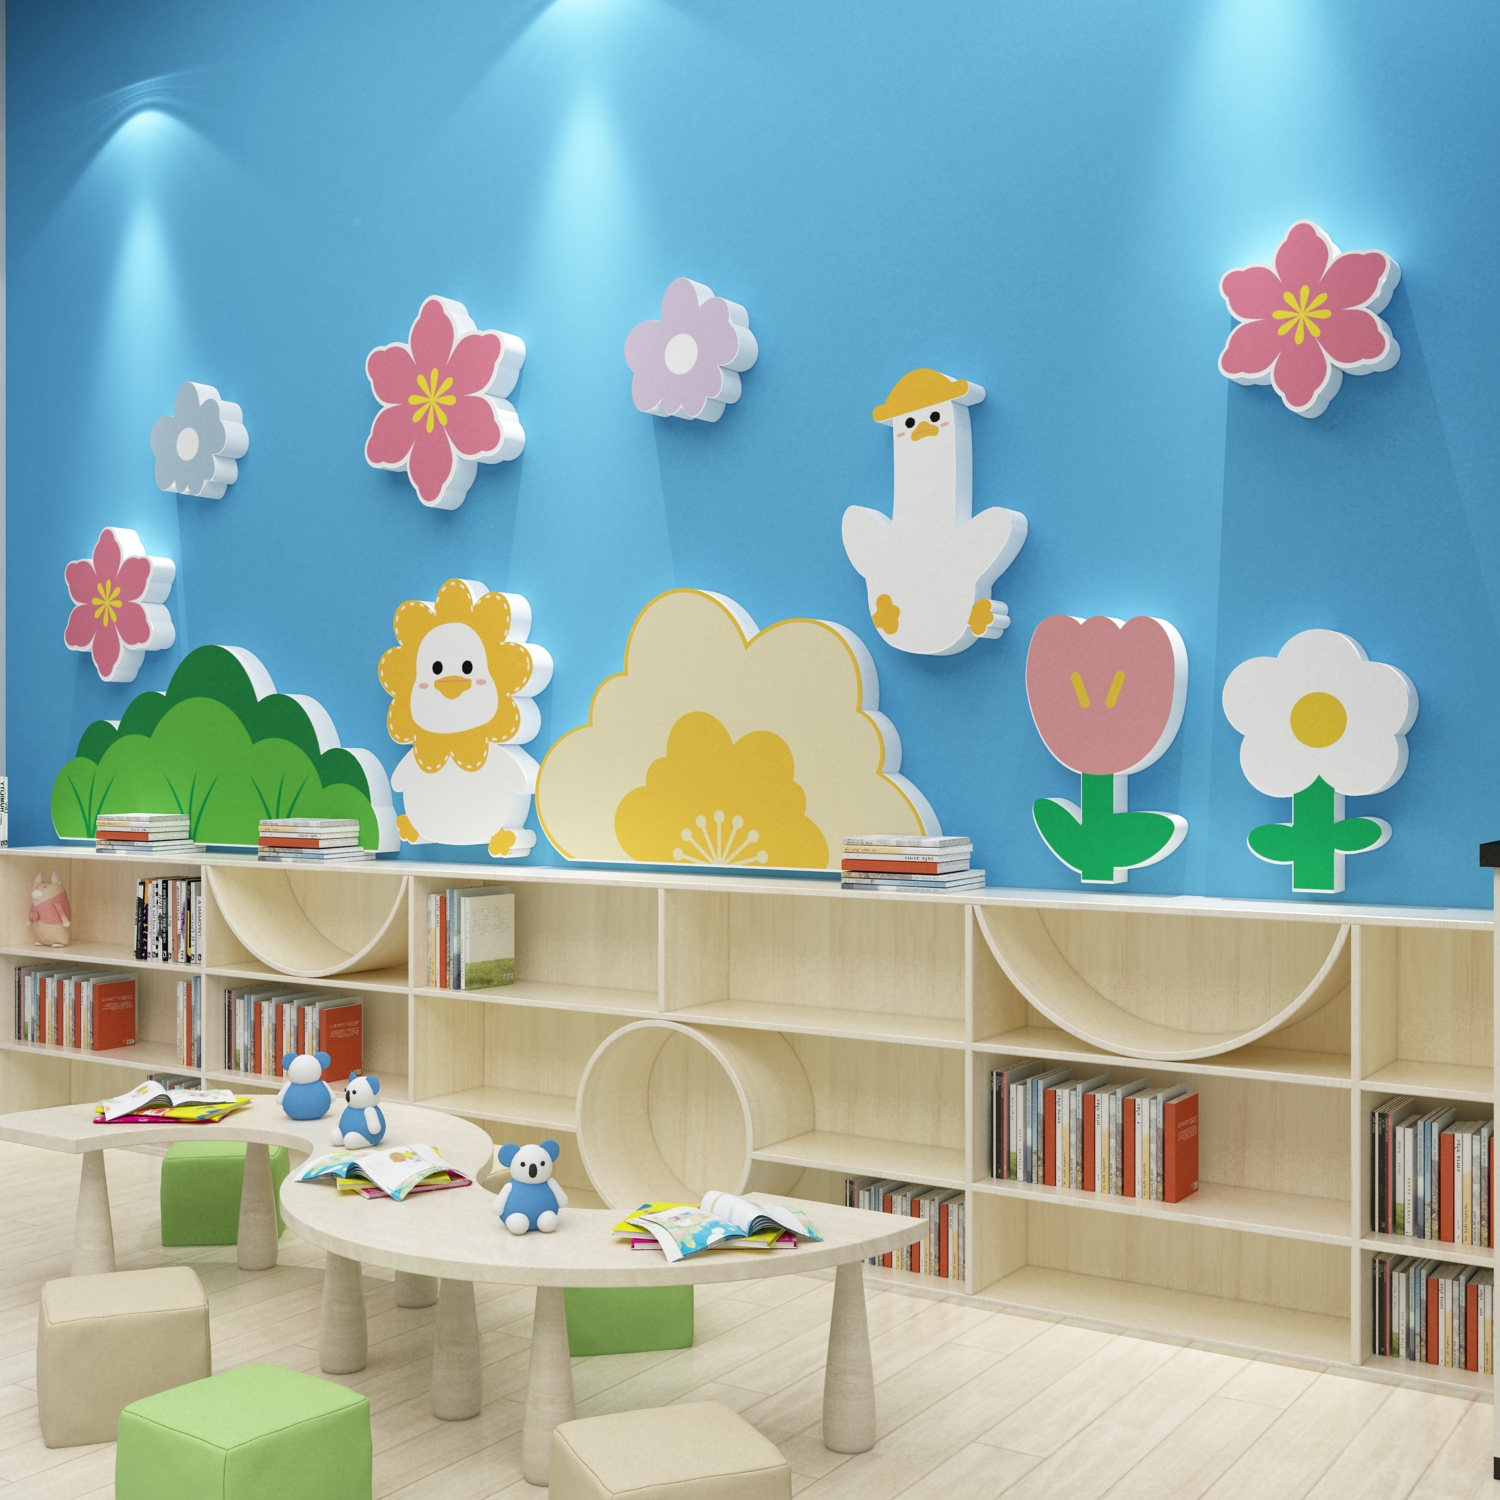 高端幼儿园春天环创主题墙面装饰成品布置文化材料背景小黄鸭贴纸